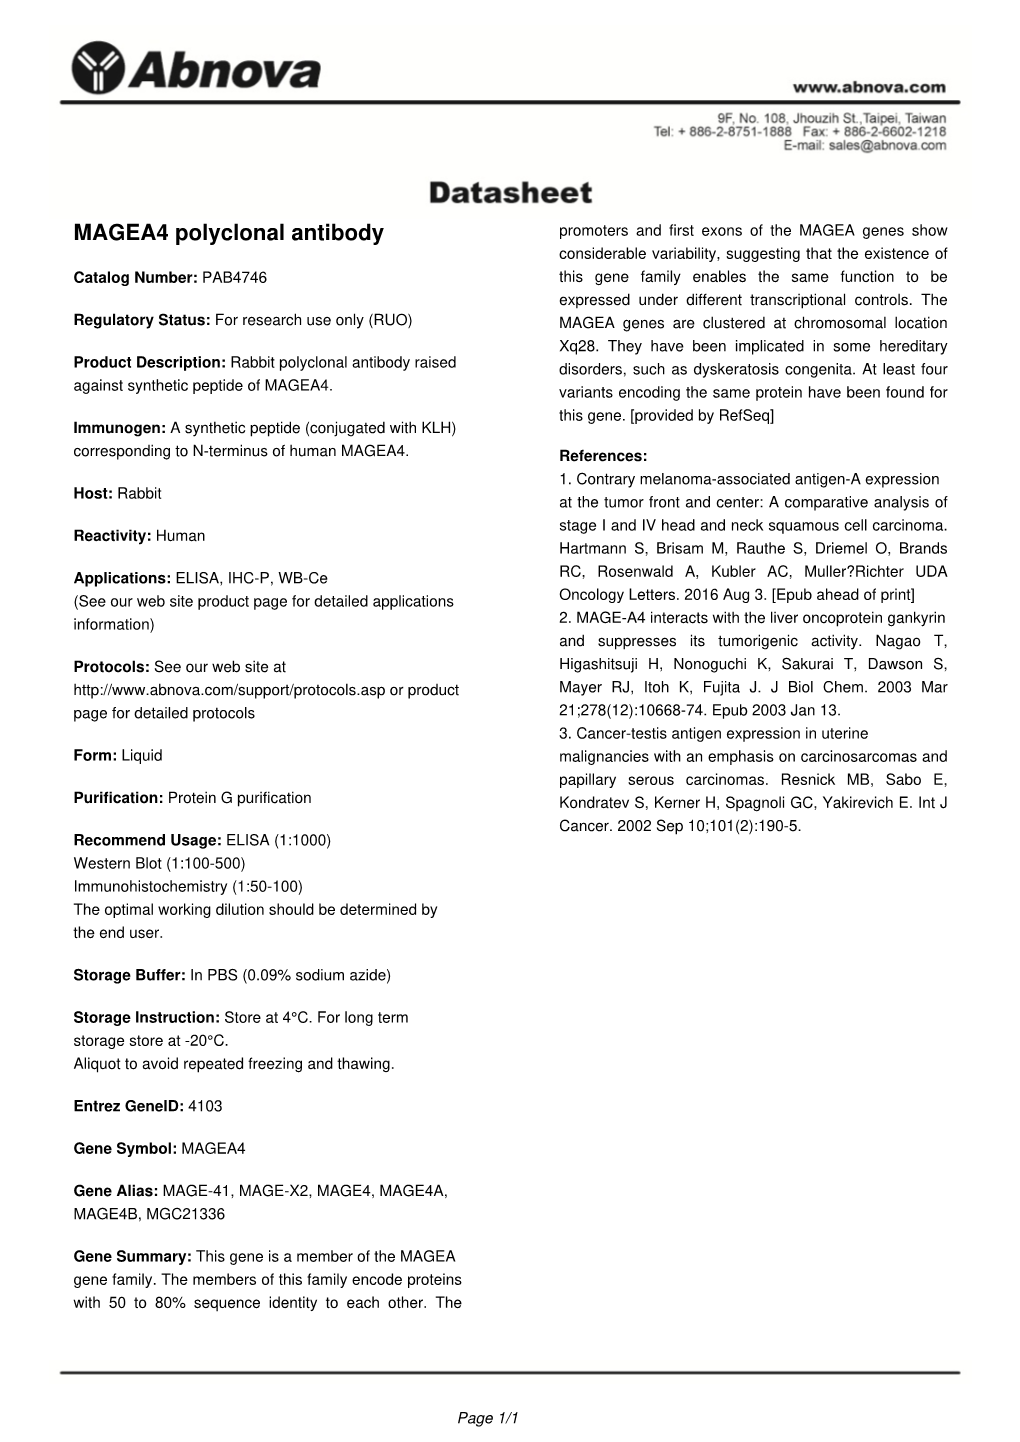 MAGEA4 Polyclonal Antibody